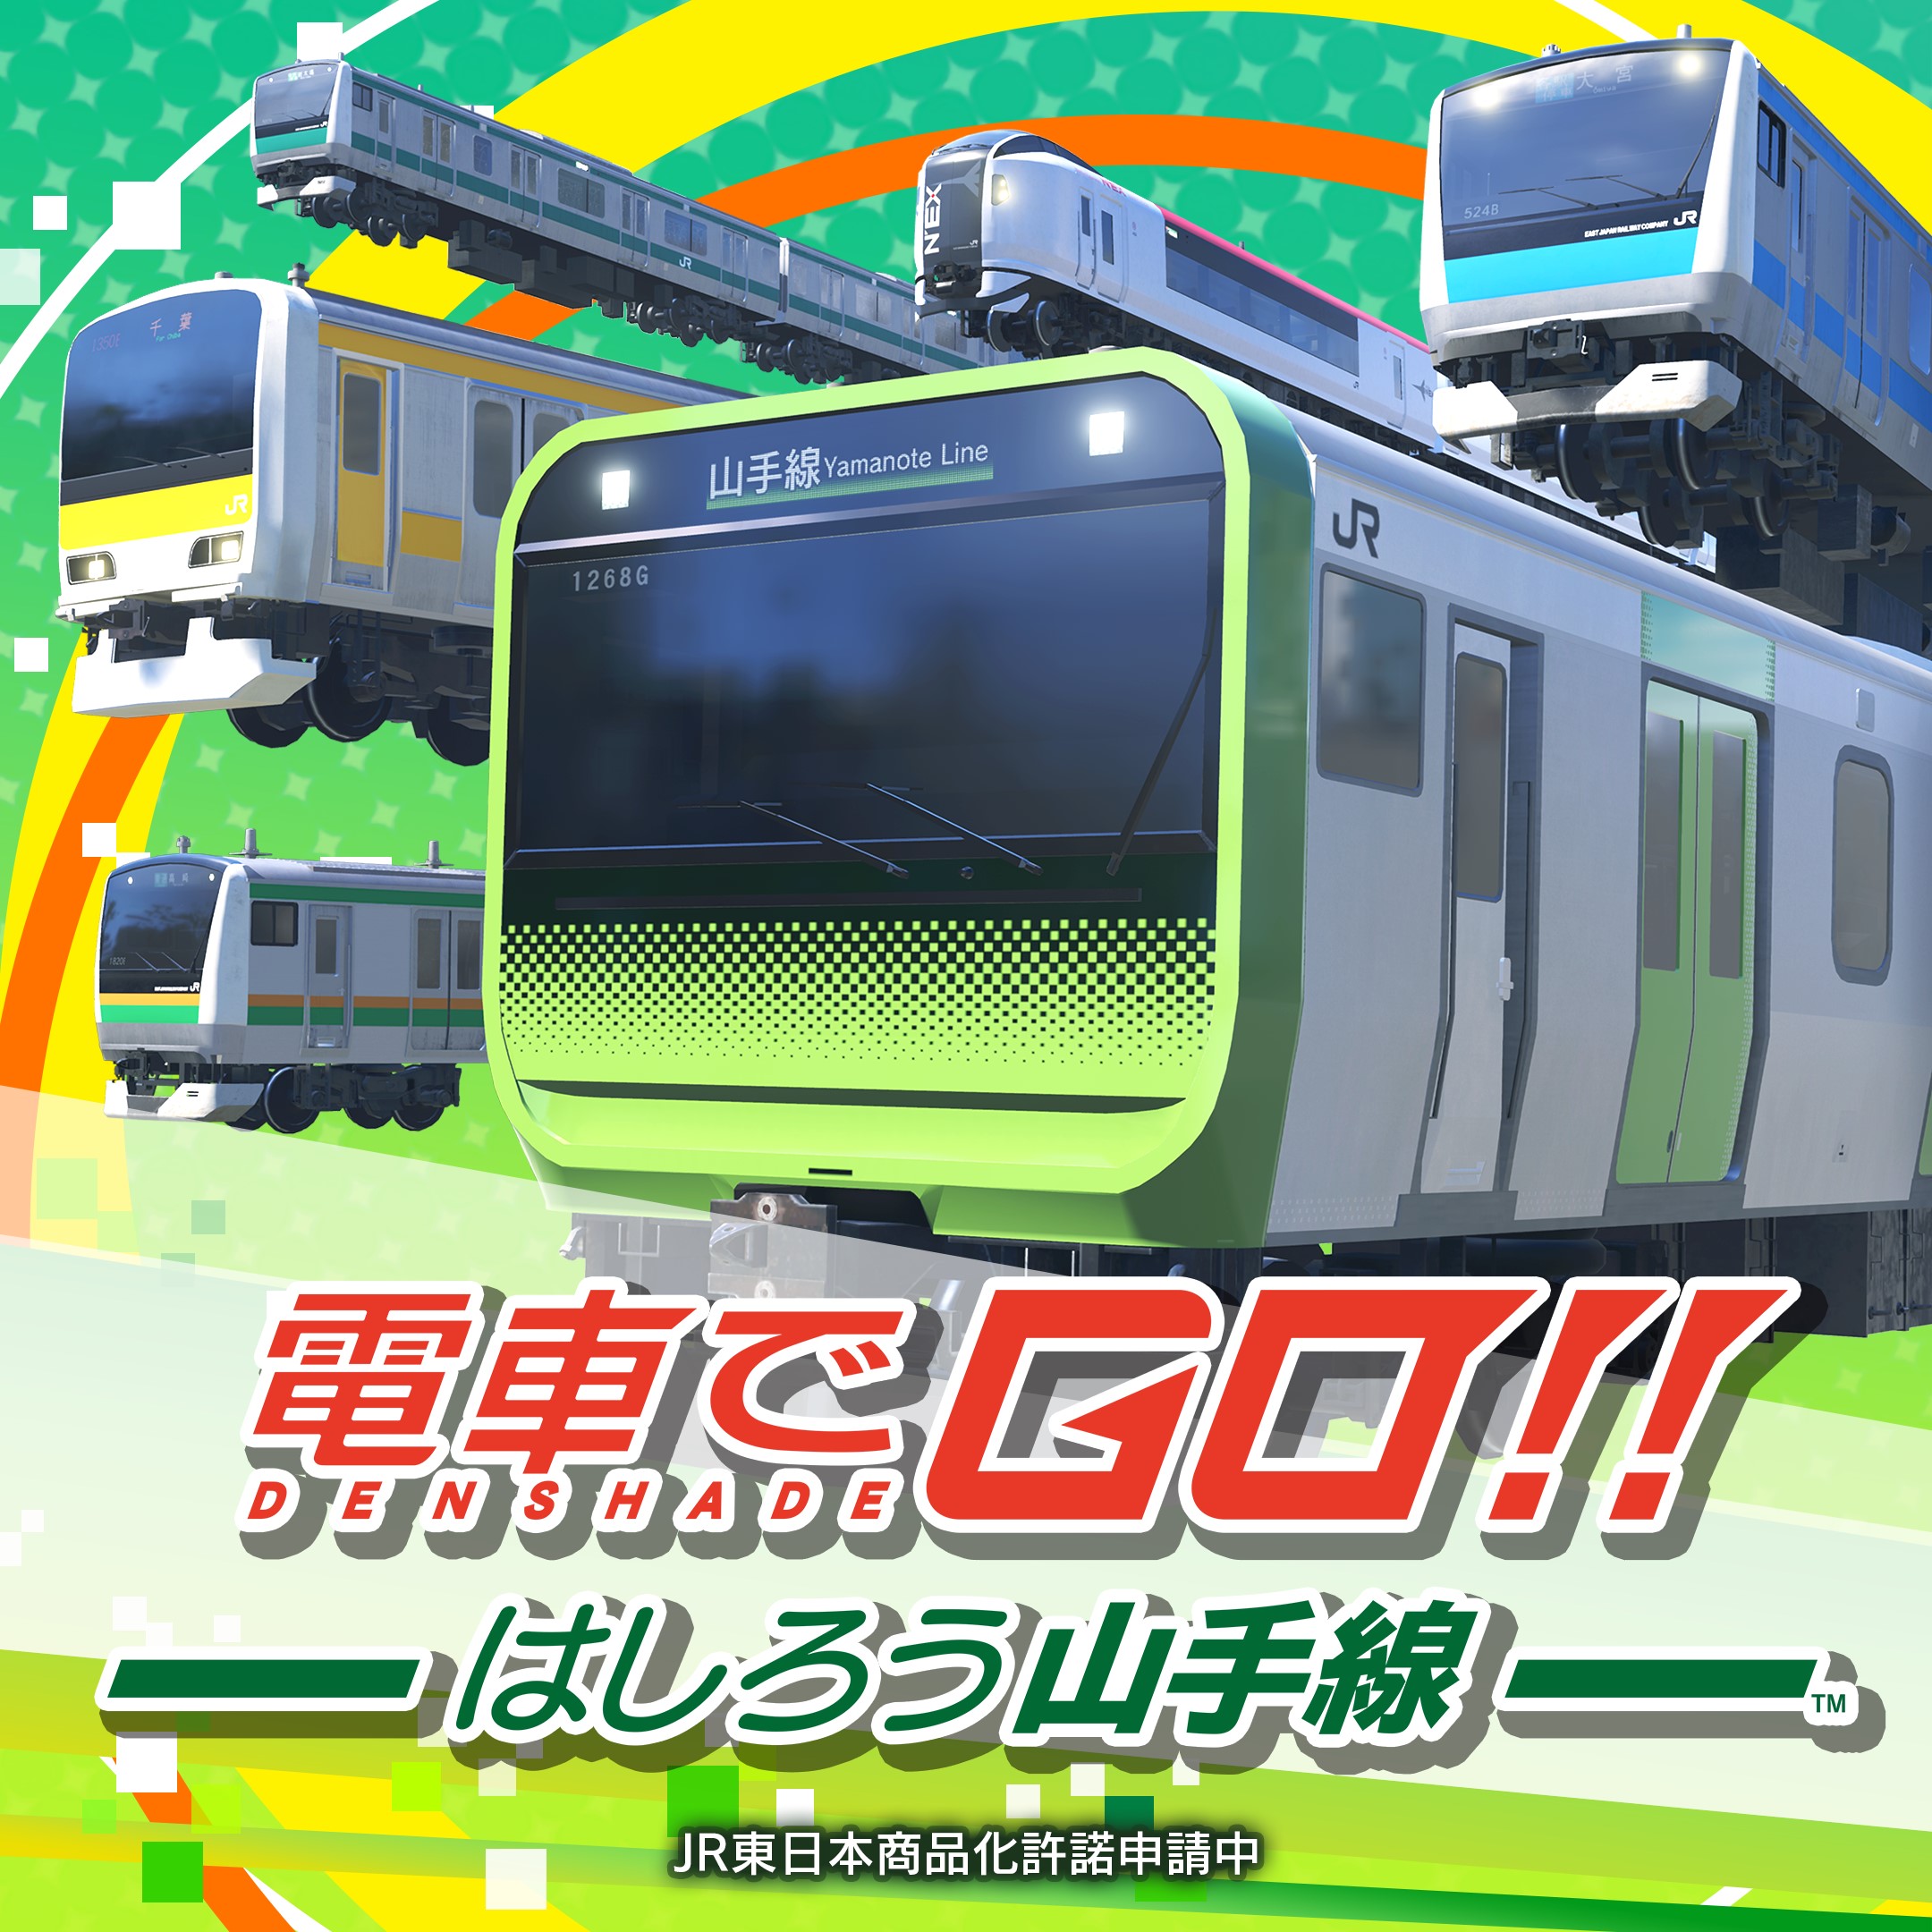 山手線にフォーカスした電車運転シミュレーション「電車で GO!! はし